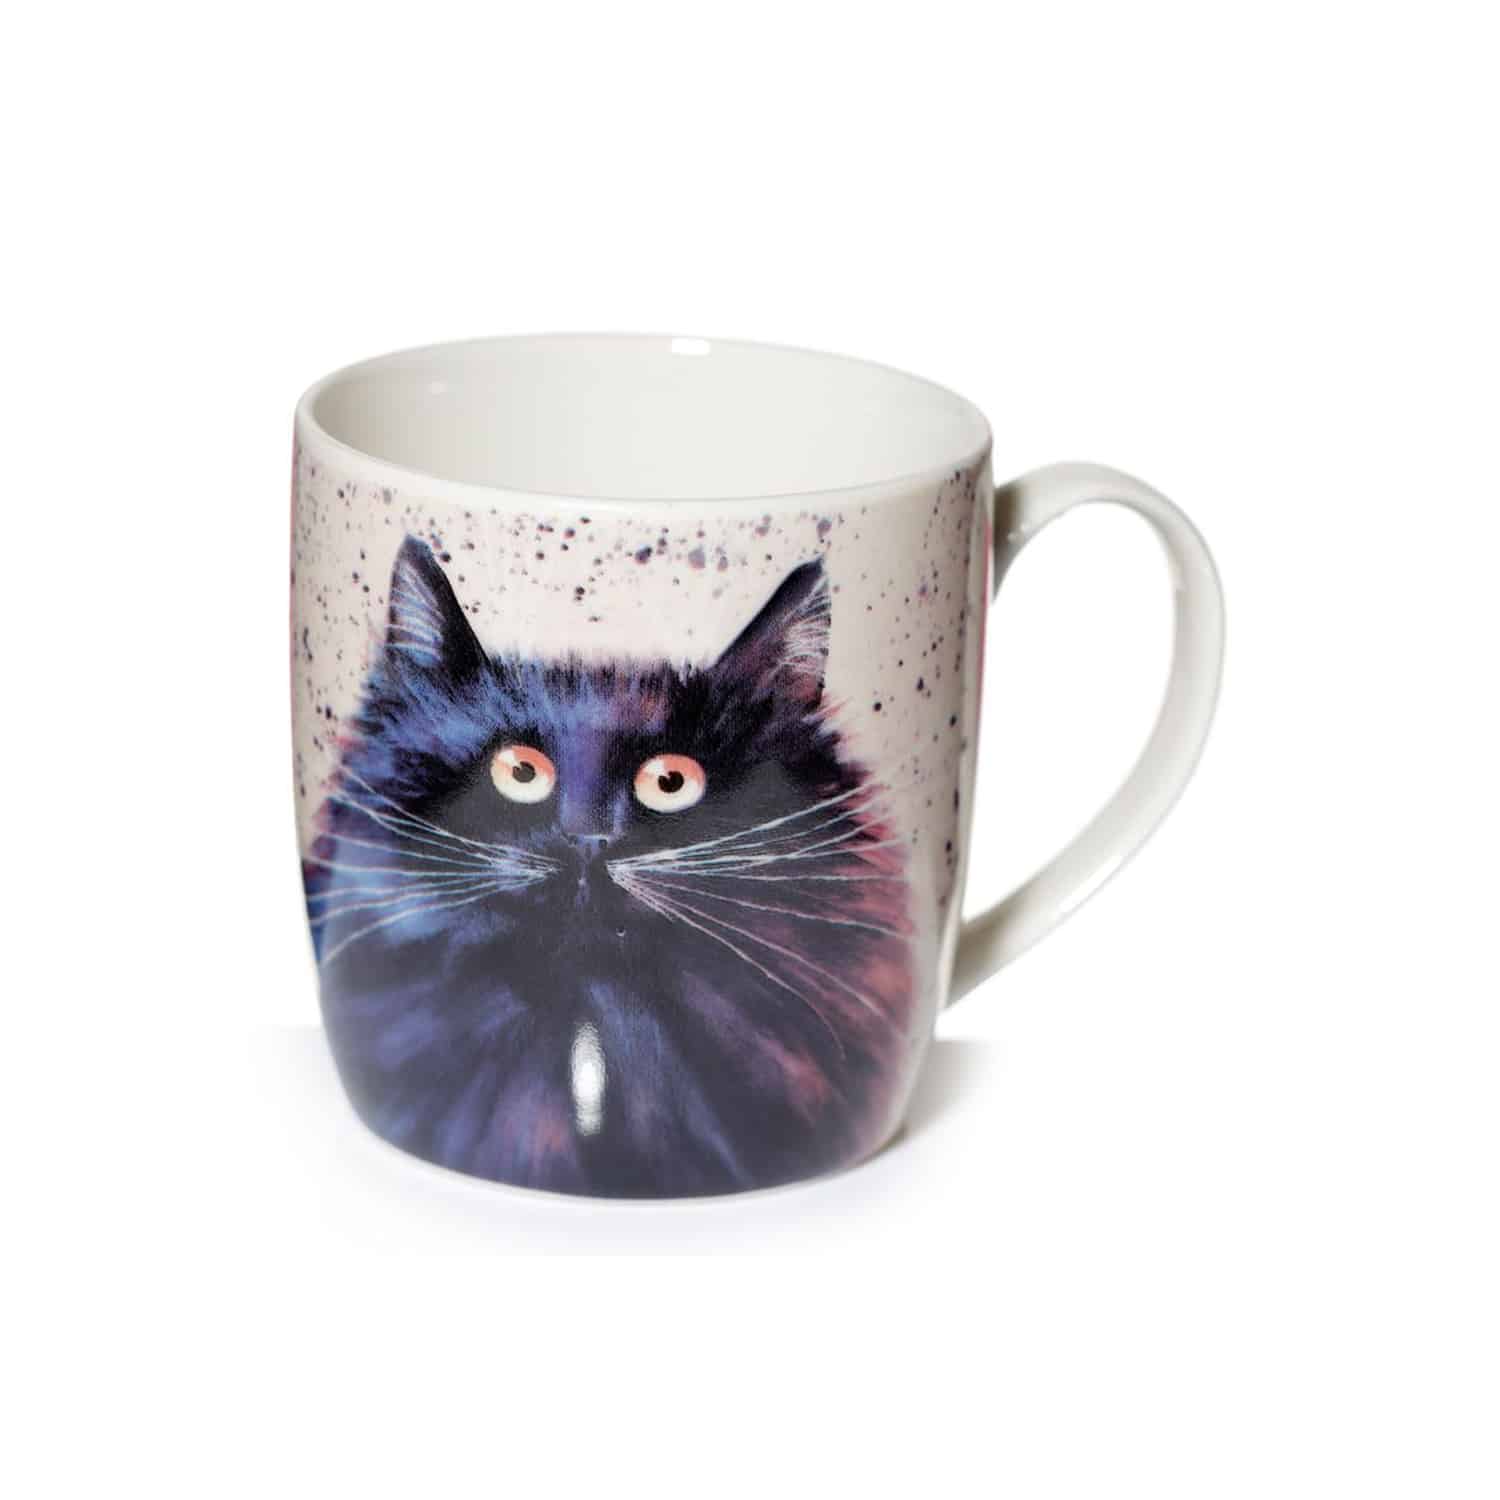 tim-haskins-cat-mug